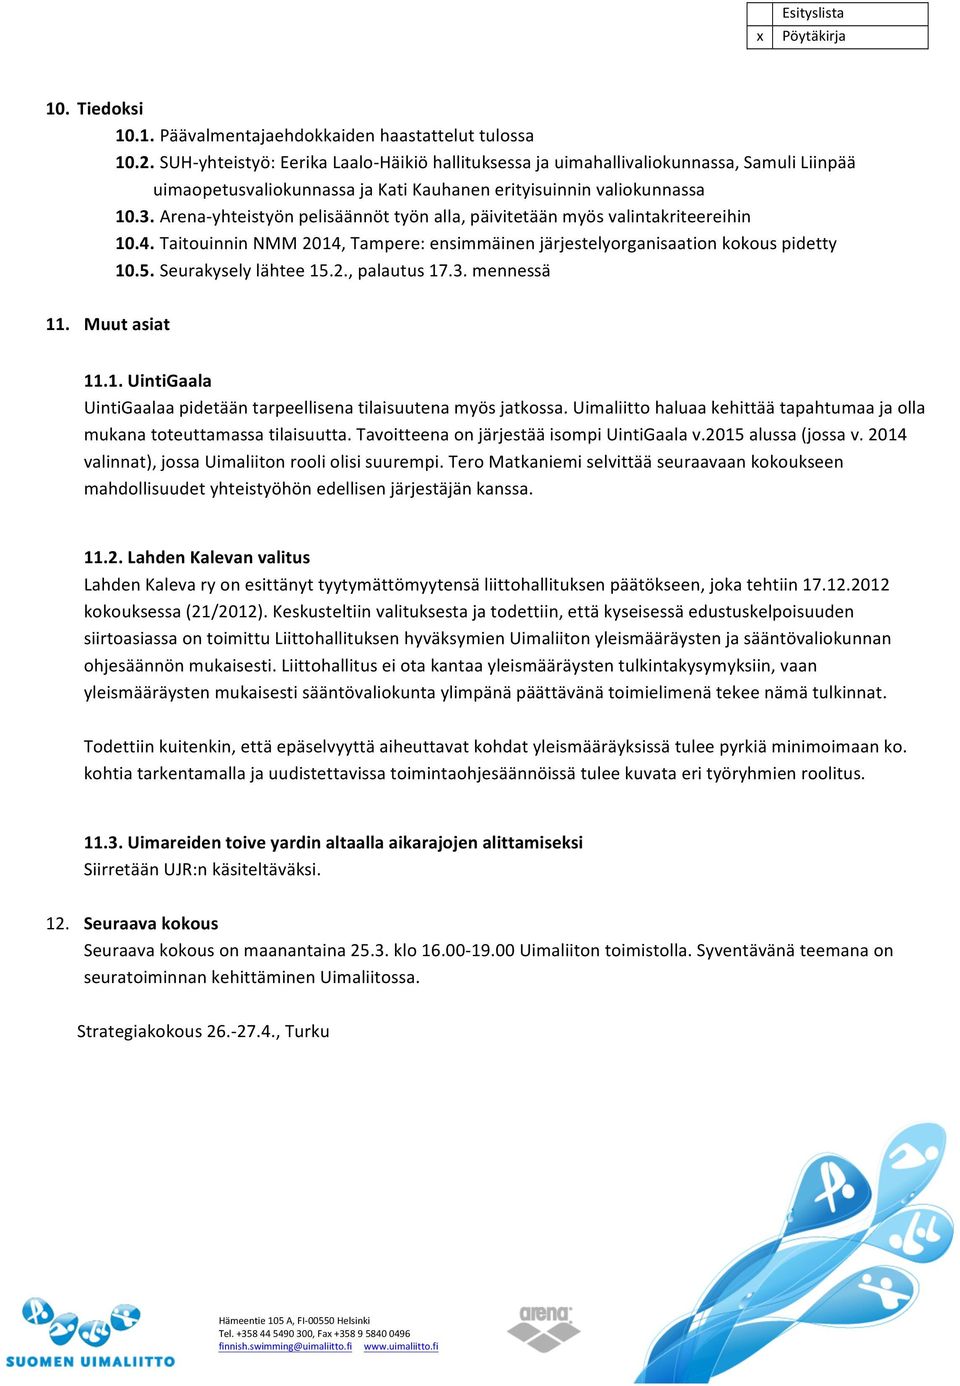 Arena- yhteistyön pelisäännöt työn alla, päivitetään myös valintakriteereihin 10.4. Taitouinnin NMM 2014, Tampere: ensimmäinen järjestelyorganisaation kokous pidetty 10.5. Seurakysely lähtee 15.2., palautus 17.